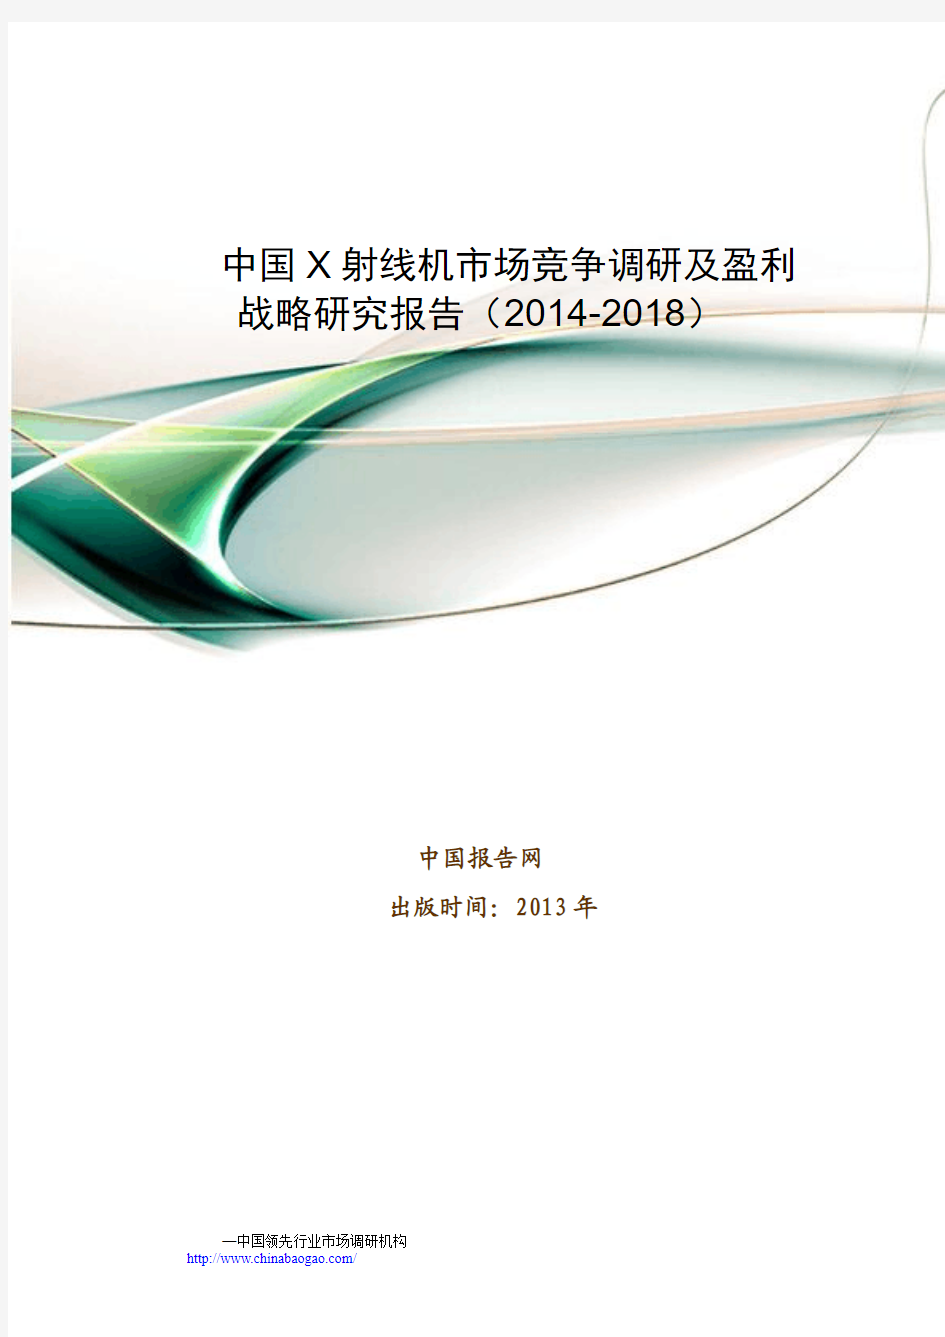 中国X射线机市场竞争调研及盈利战略研究报告(2014-2018)